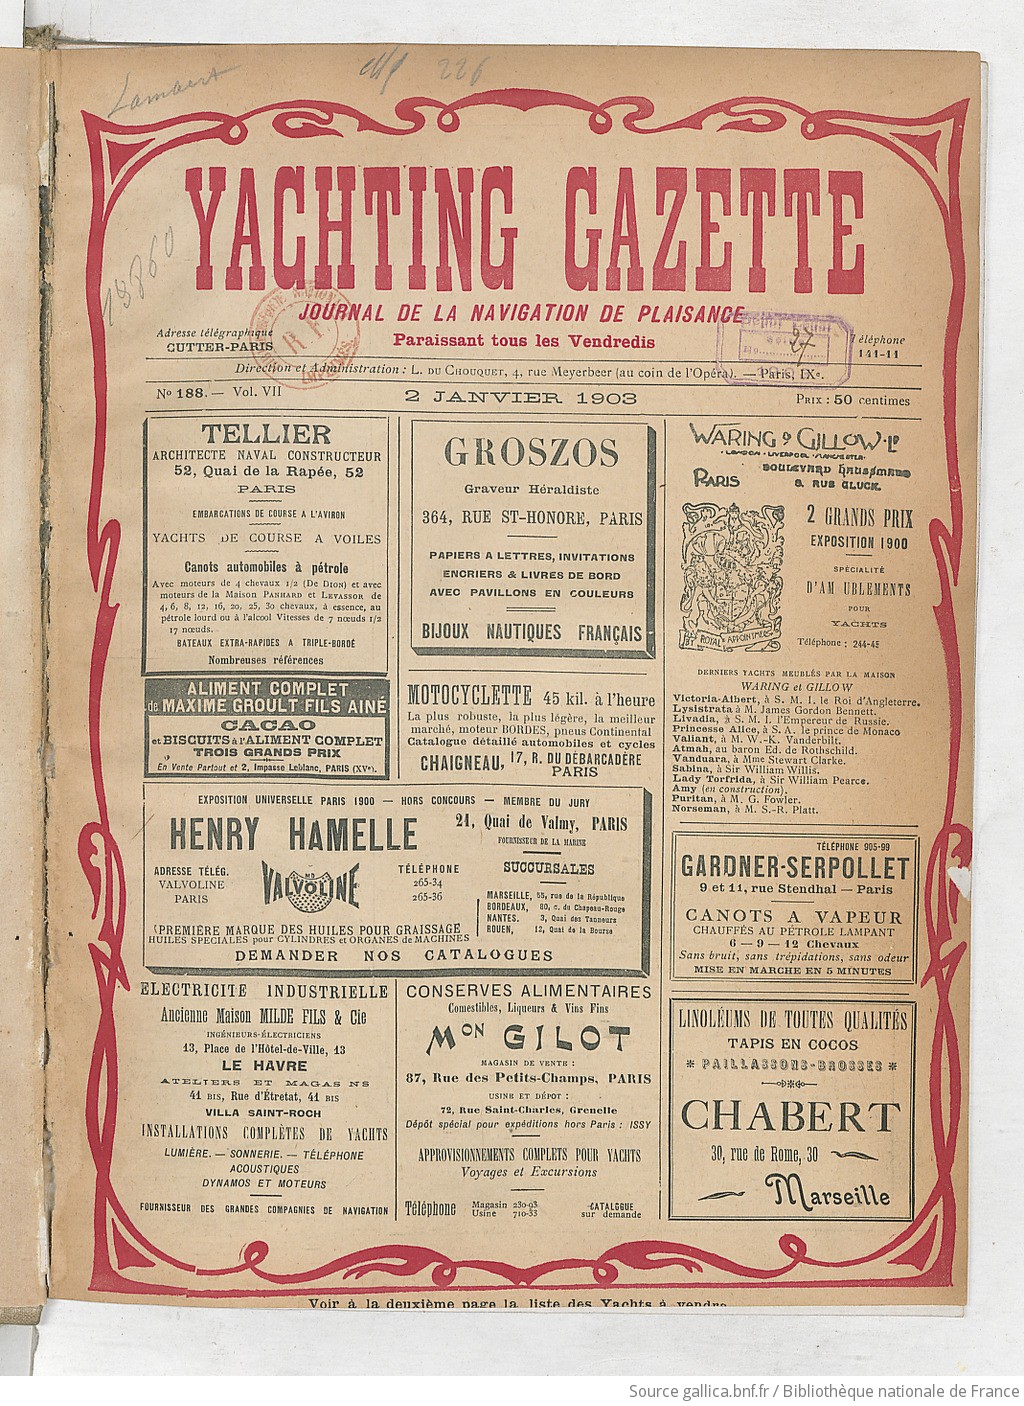 Yachting gazette : journal de la navigation de plaisance